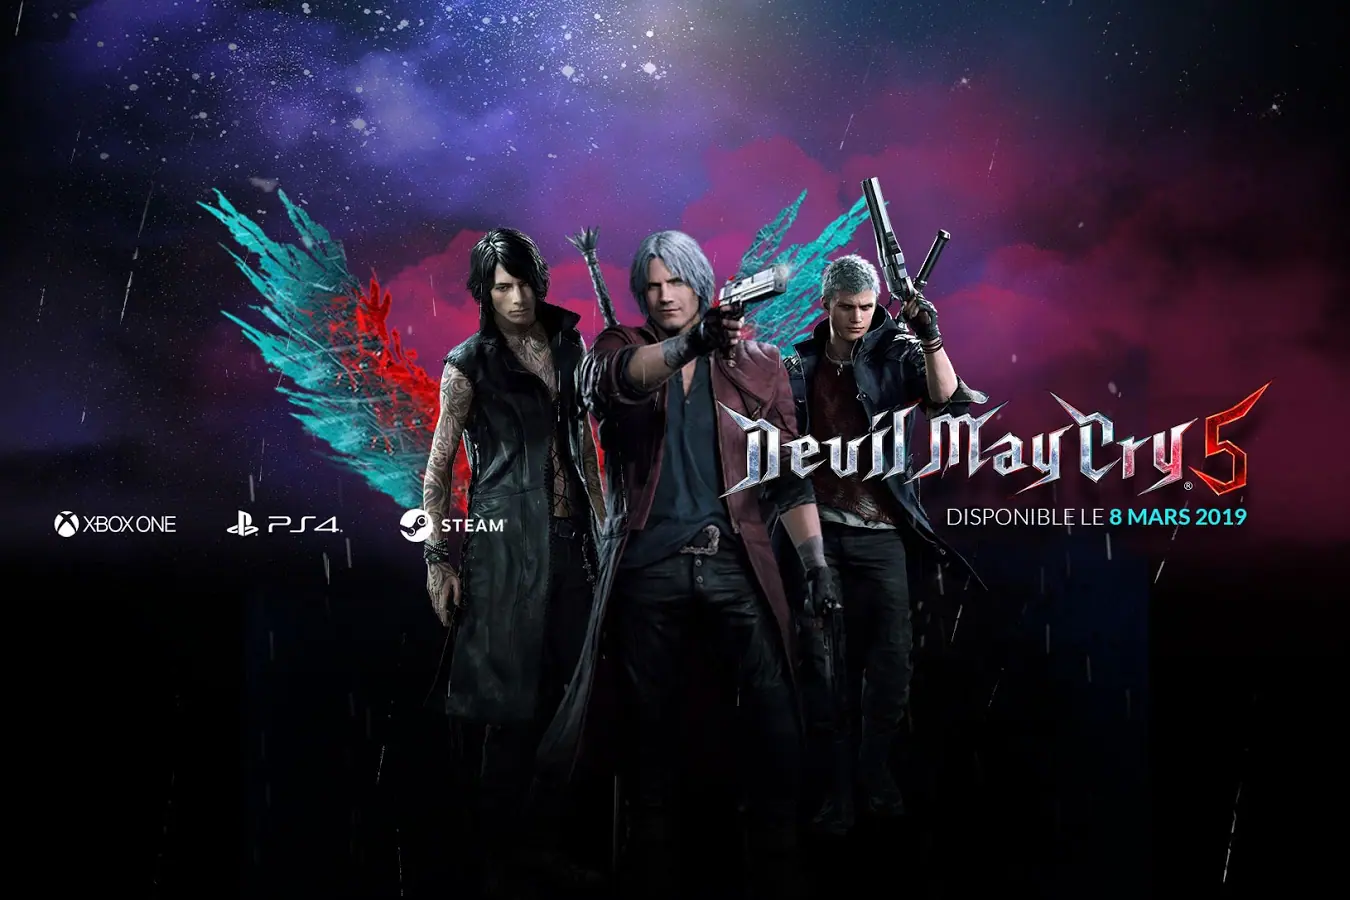 Devil May Cry 5 - Dispo le 8 mars 1